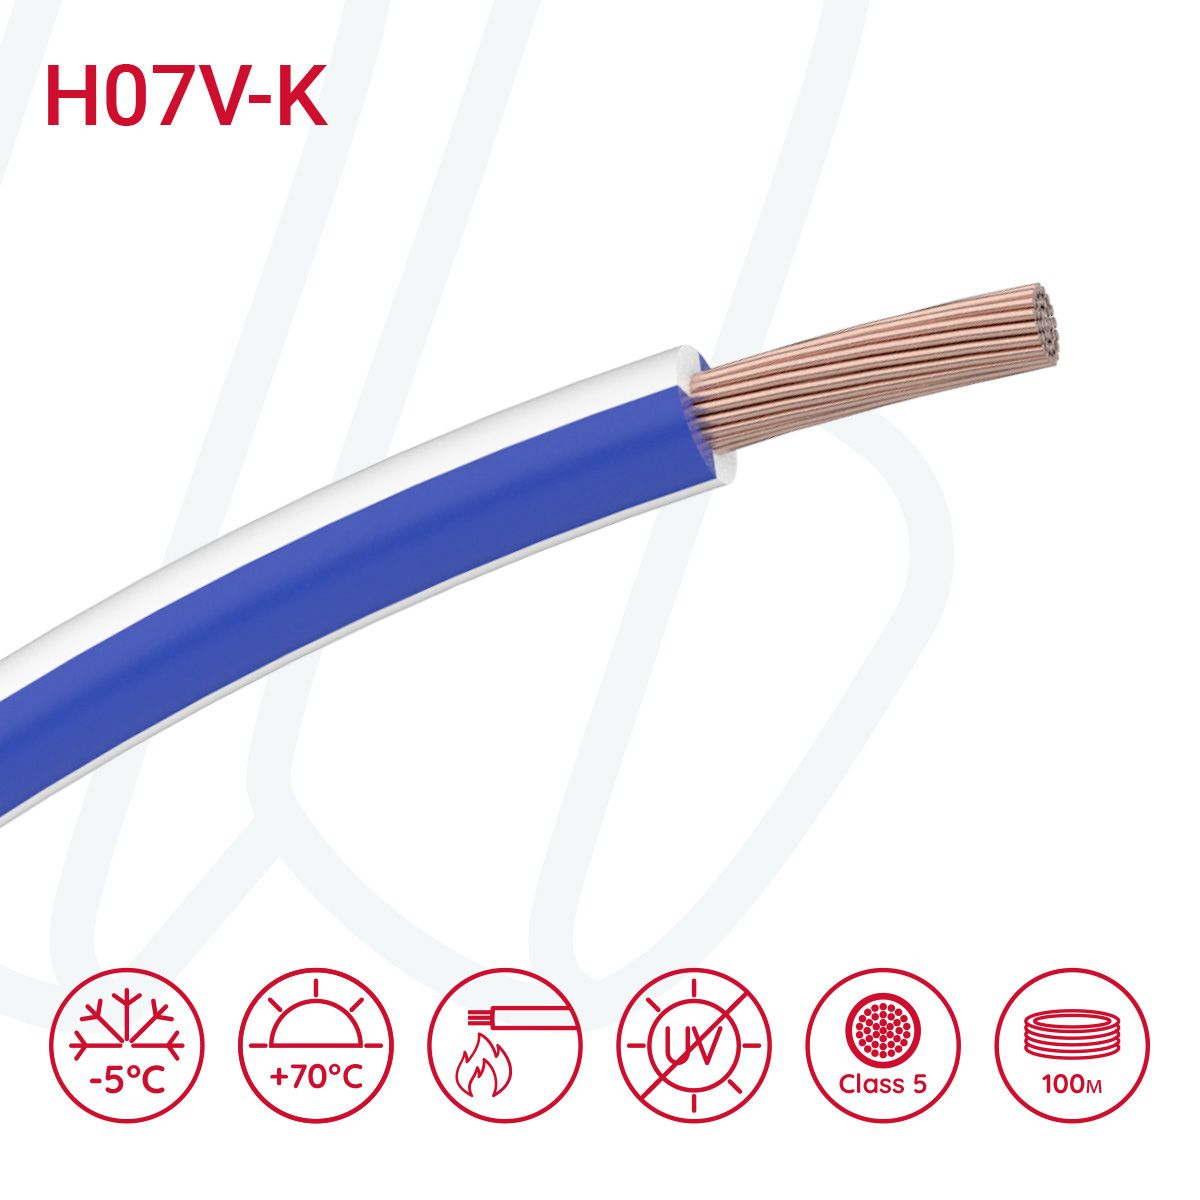 Провід монтажний гнучкий H07V-K 1.5 мм² темно-синій/білий, 01, 1.5